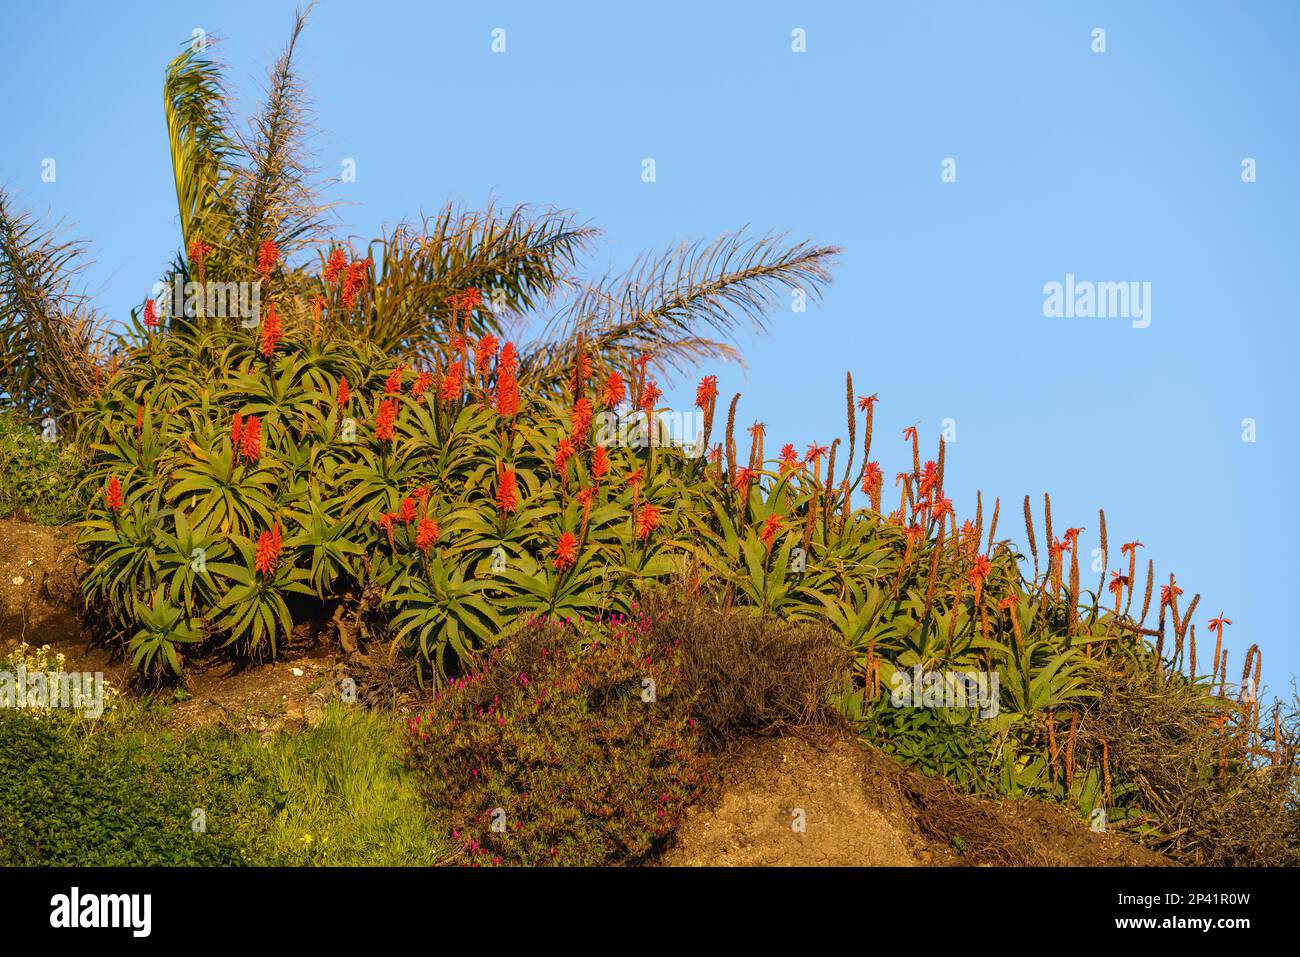 Aloe montagna (Aloe marlothii) in fiore sulla cima di una collina, costa della California. Aloe montagna è un grande sempreverde succulente Foto Stock